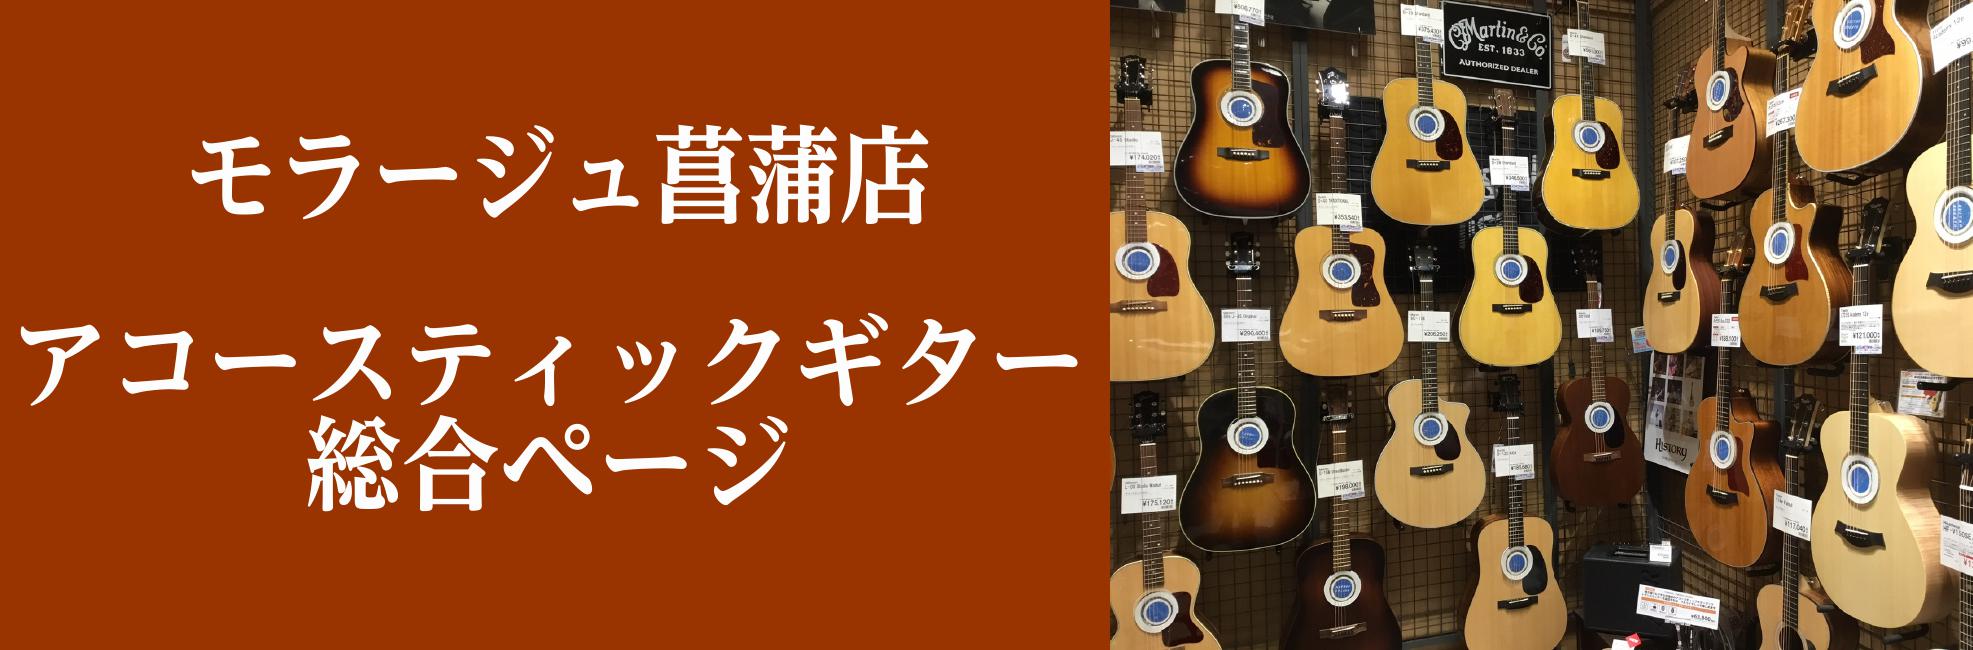 *目次 +[#uriba:title=当店アコースティックギターコーナーのご案内] --[#a:title=初心者コーナー] --[#b:title=子ども向け、アウトドア向けのミニギター] --[#c:title=日本製MADE IN JAPANコーナー] --[#d:title=ギブソン、マーチ […]